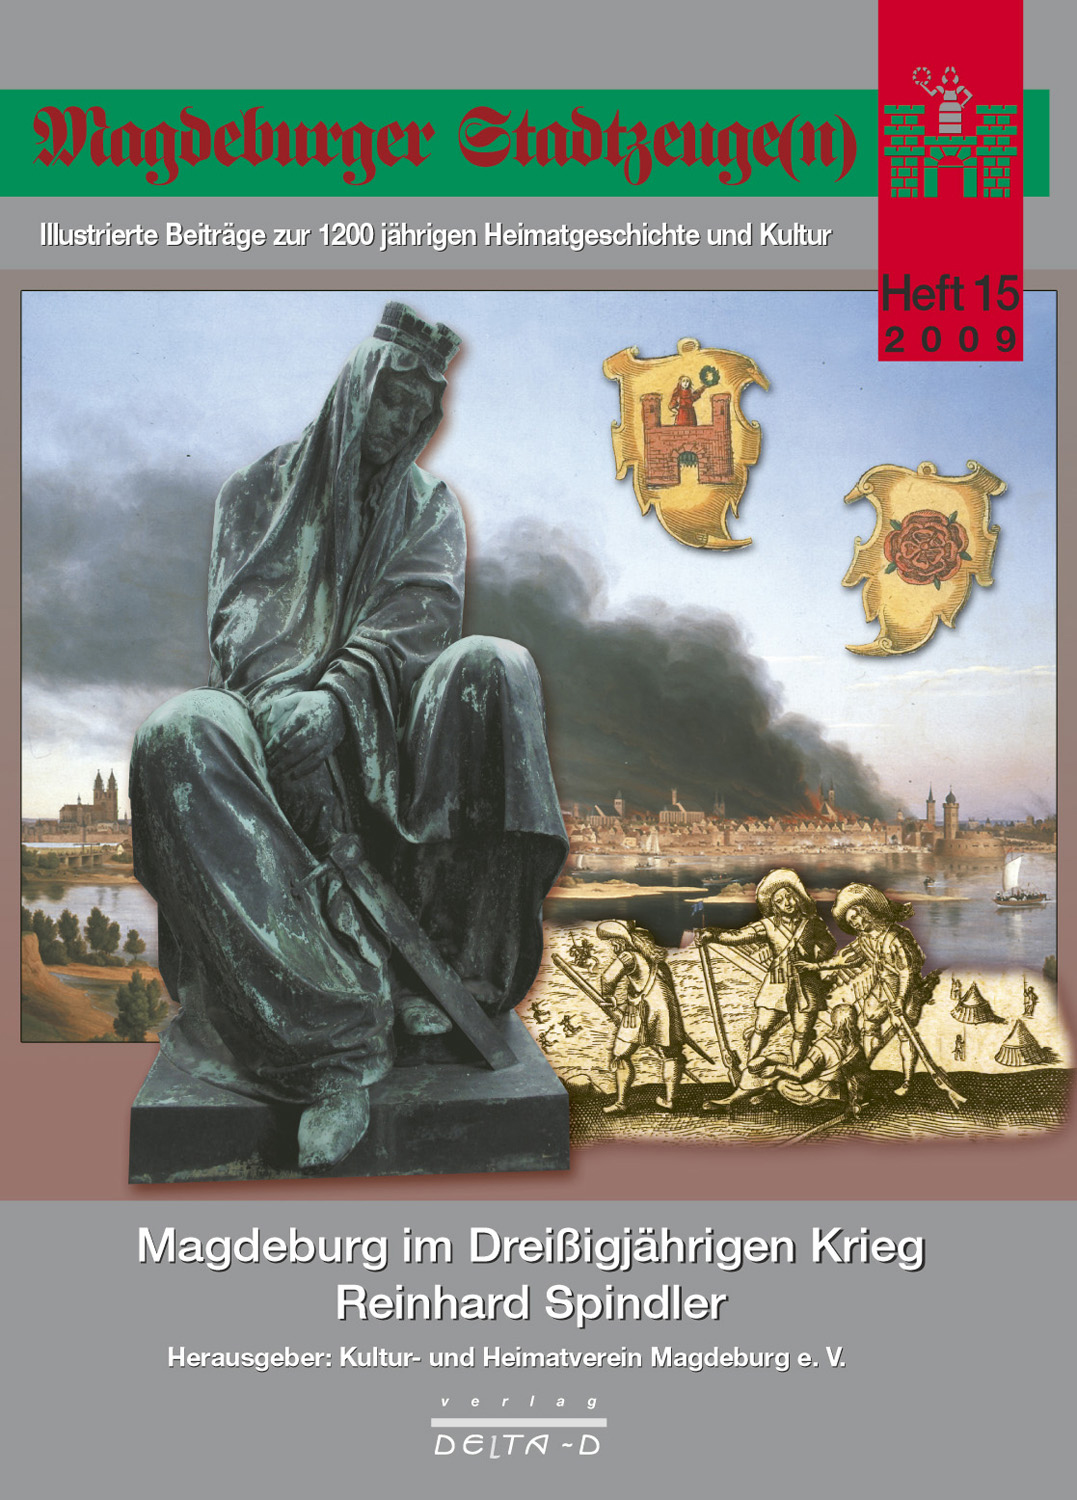 Magdeburger Stadtzeuge(n) Teil 15